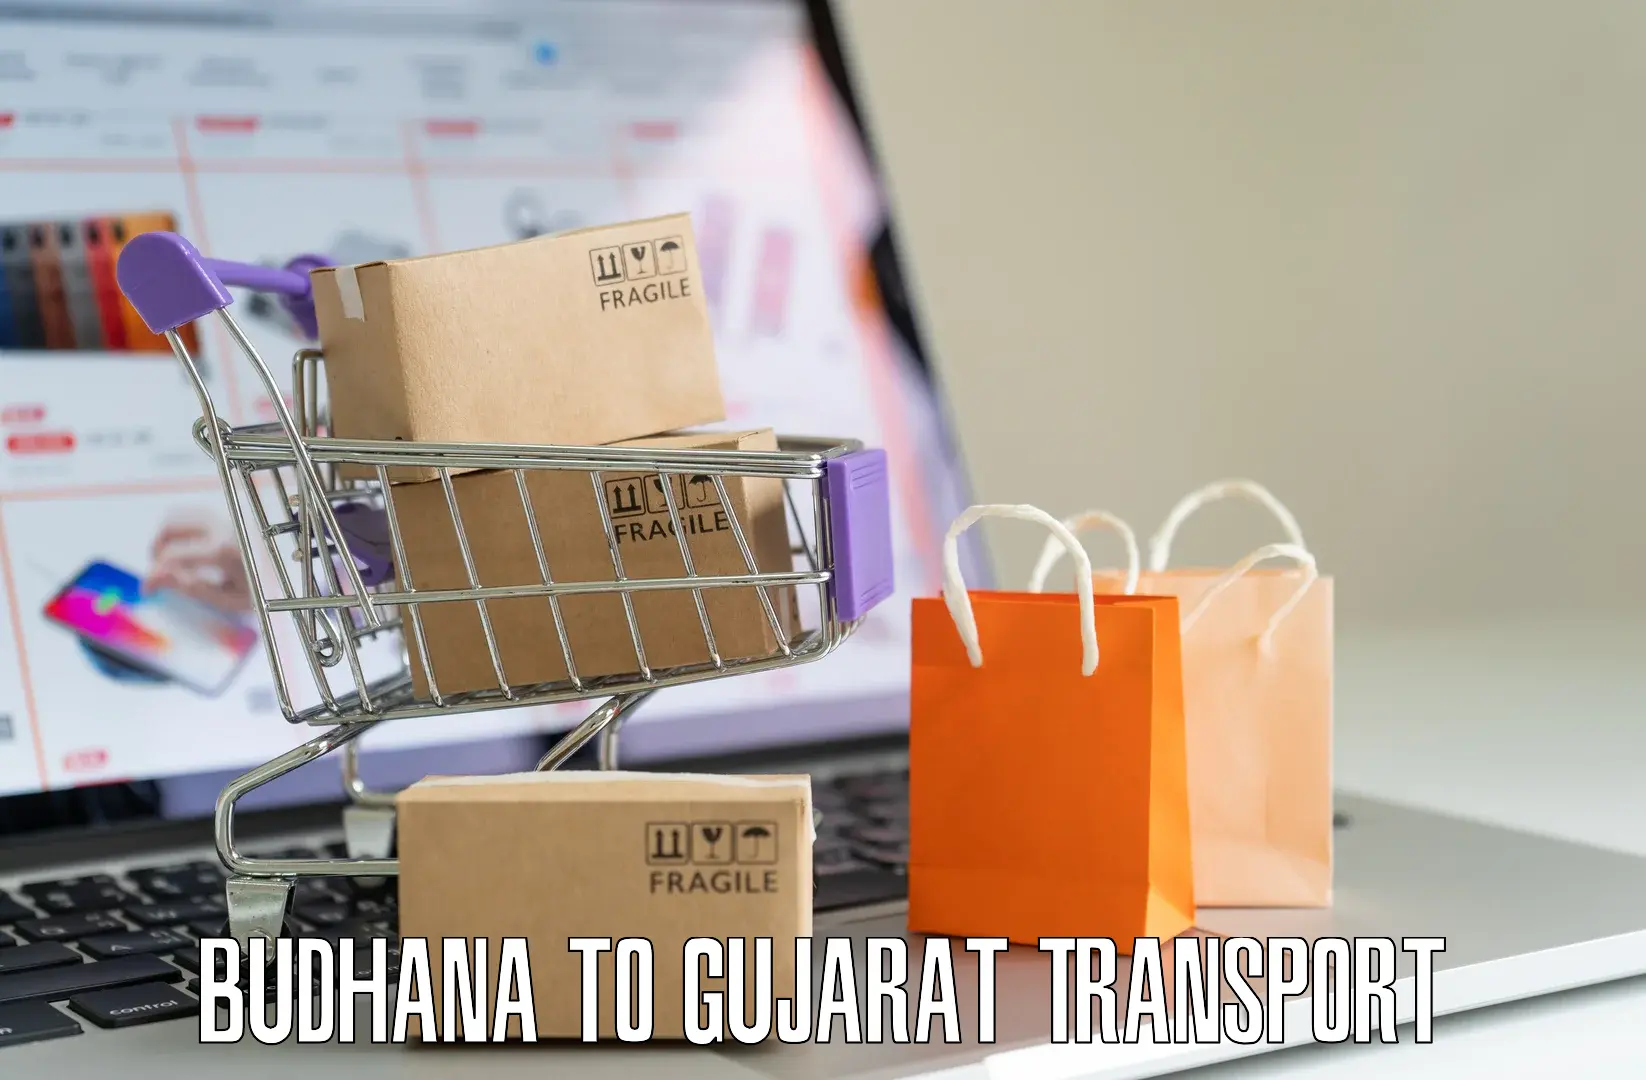 All India transport service Budhana to Becharaji